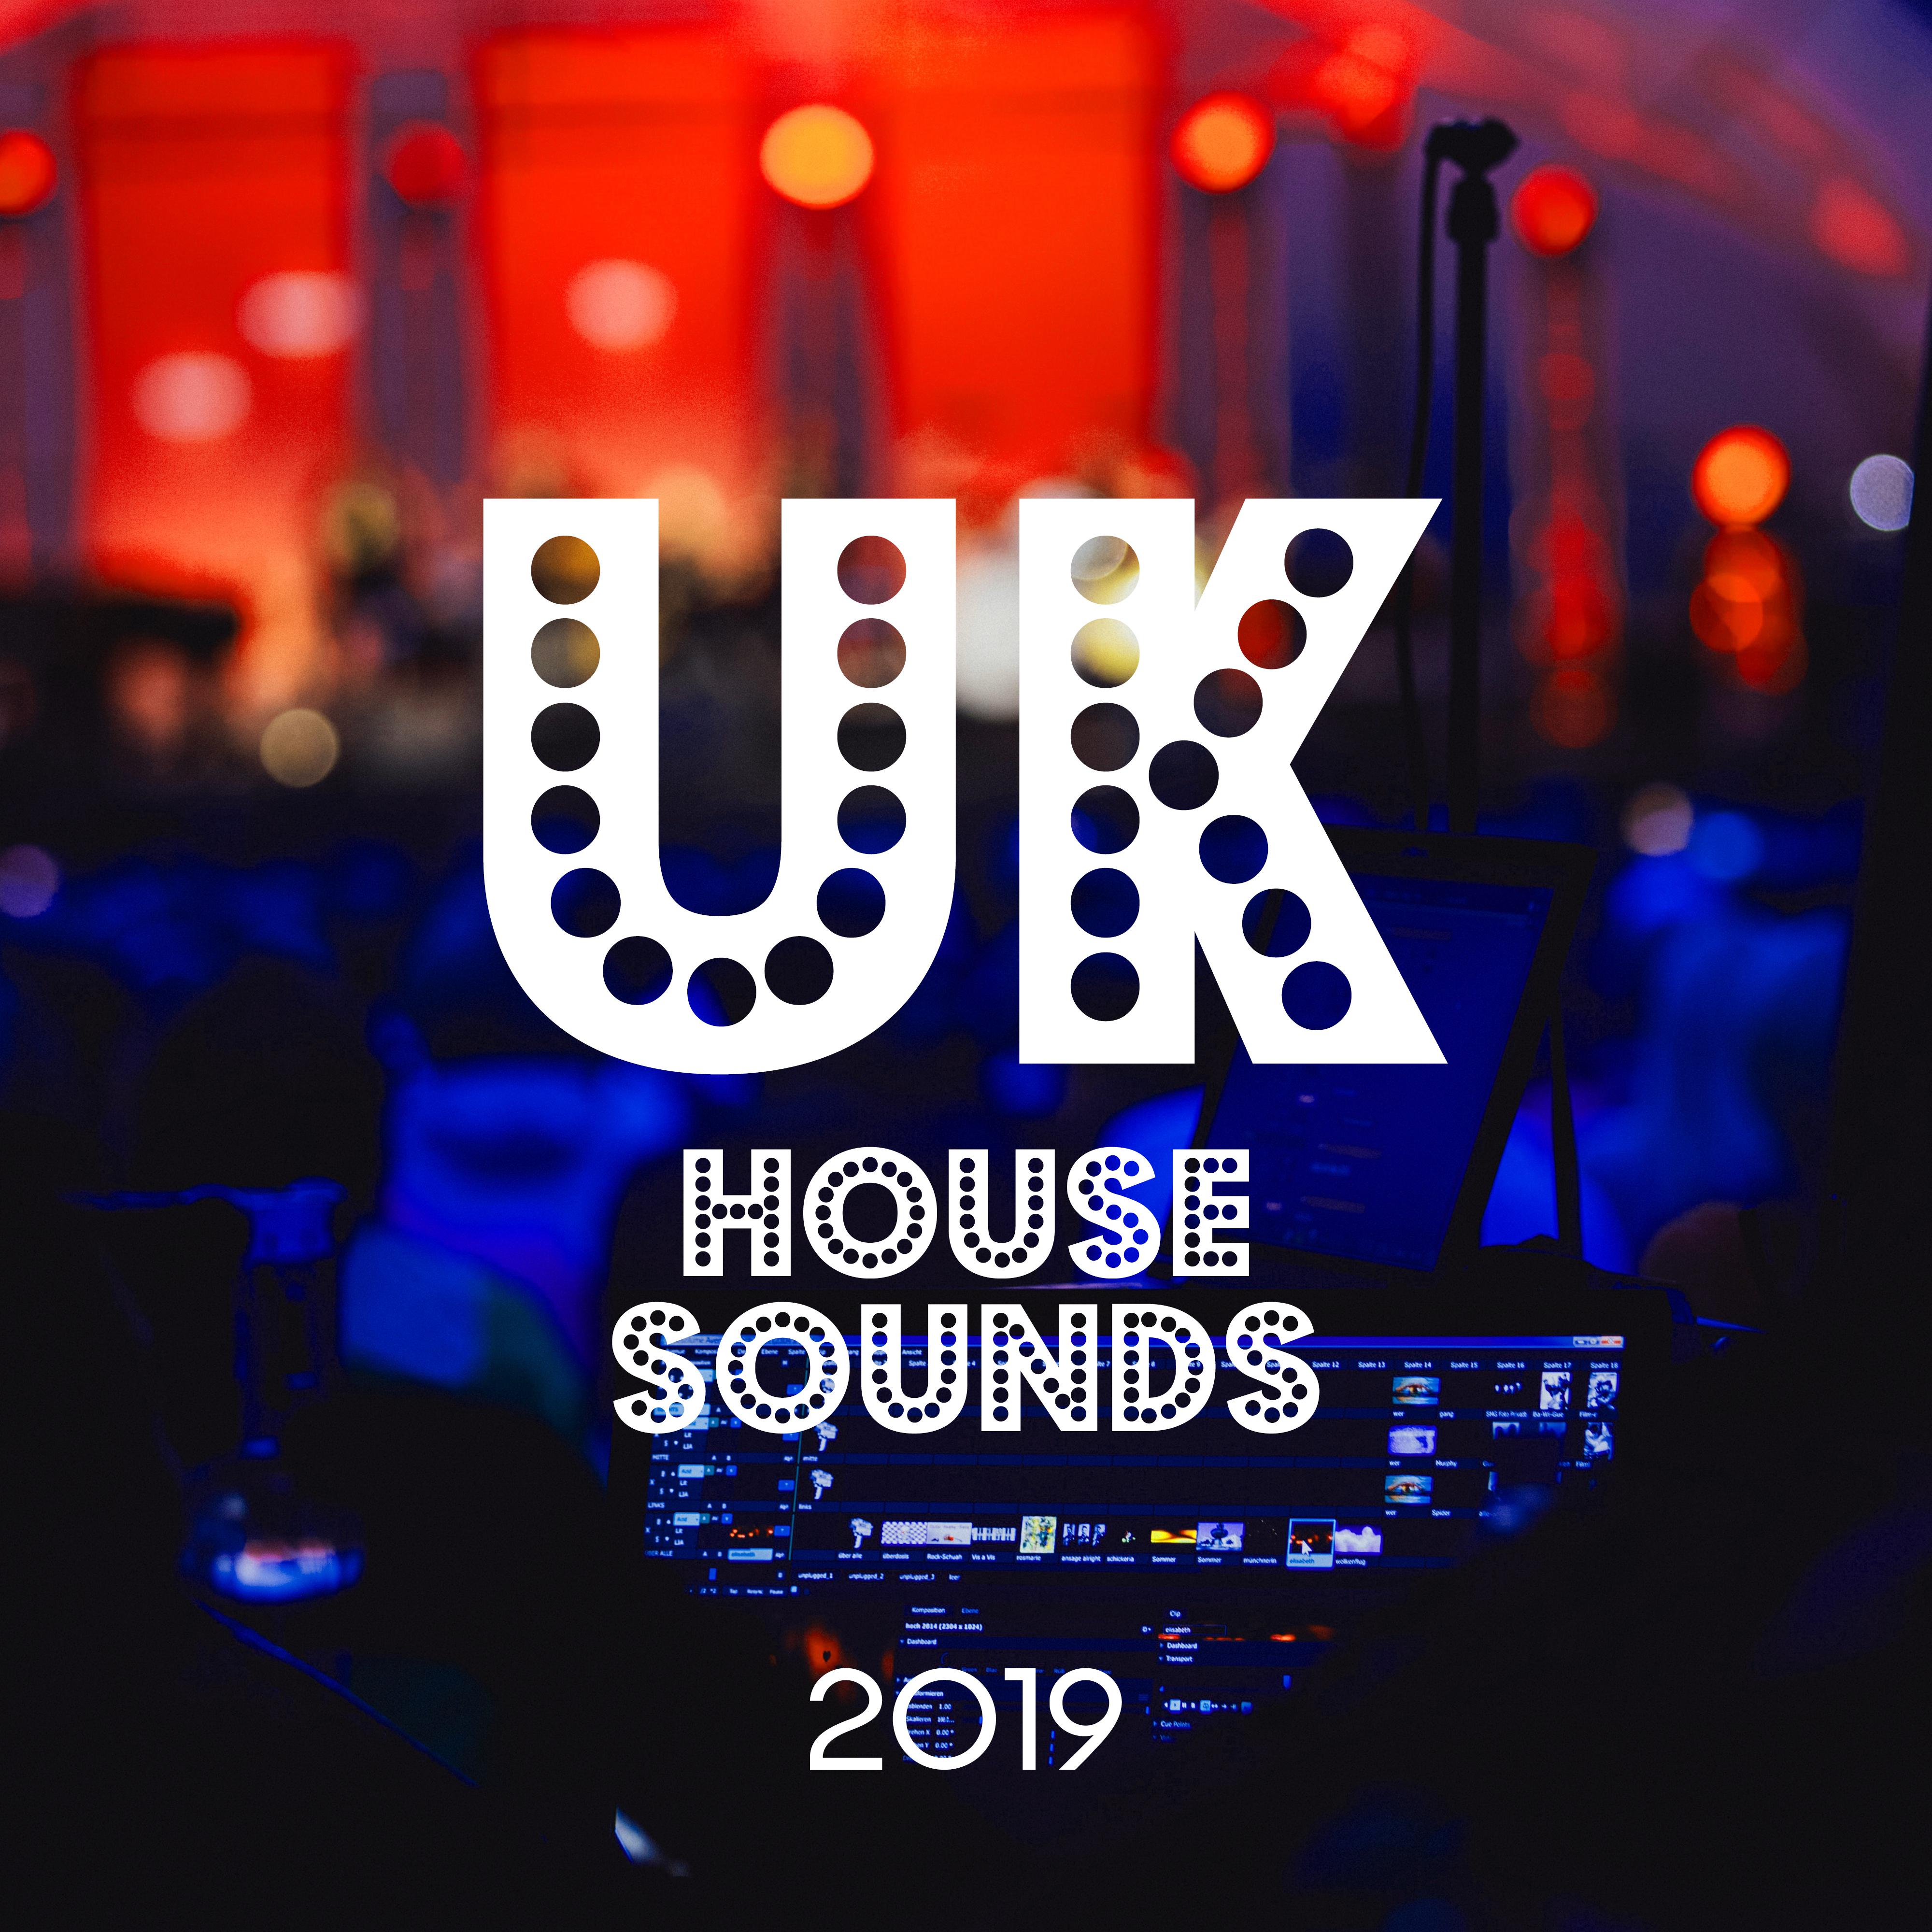 UK House Sounds 2019